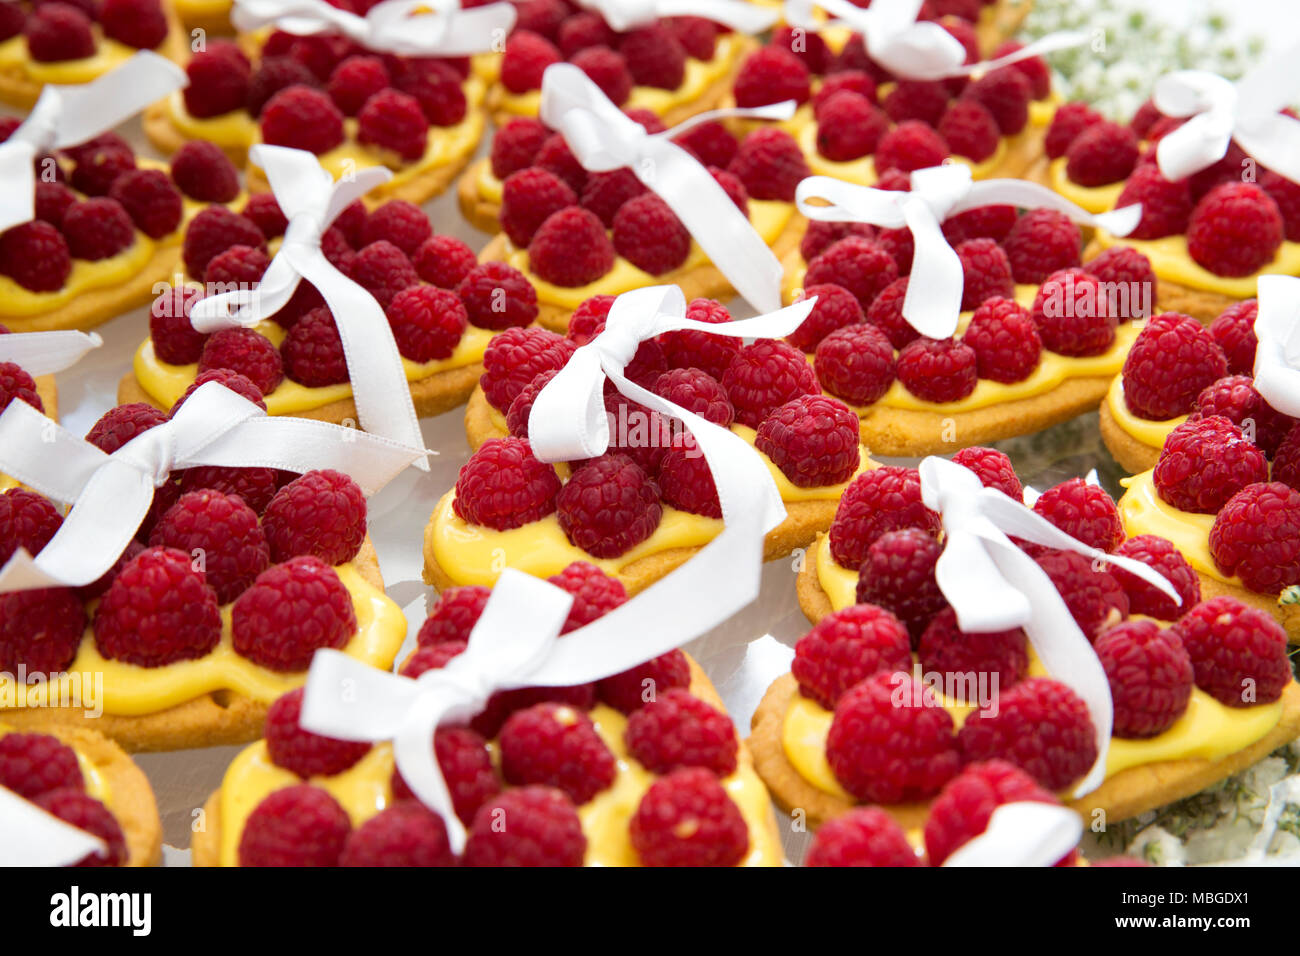 Primo piano di una torta di nozze composto da numerose piccole torte a forma di cuore con crema pasticcera e lampone. Decorata con un nastro bianco su ogni torta Foto Stock